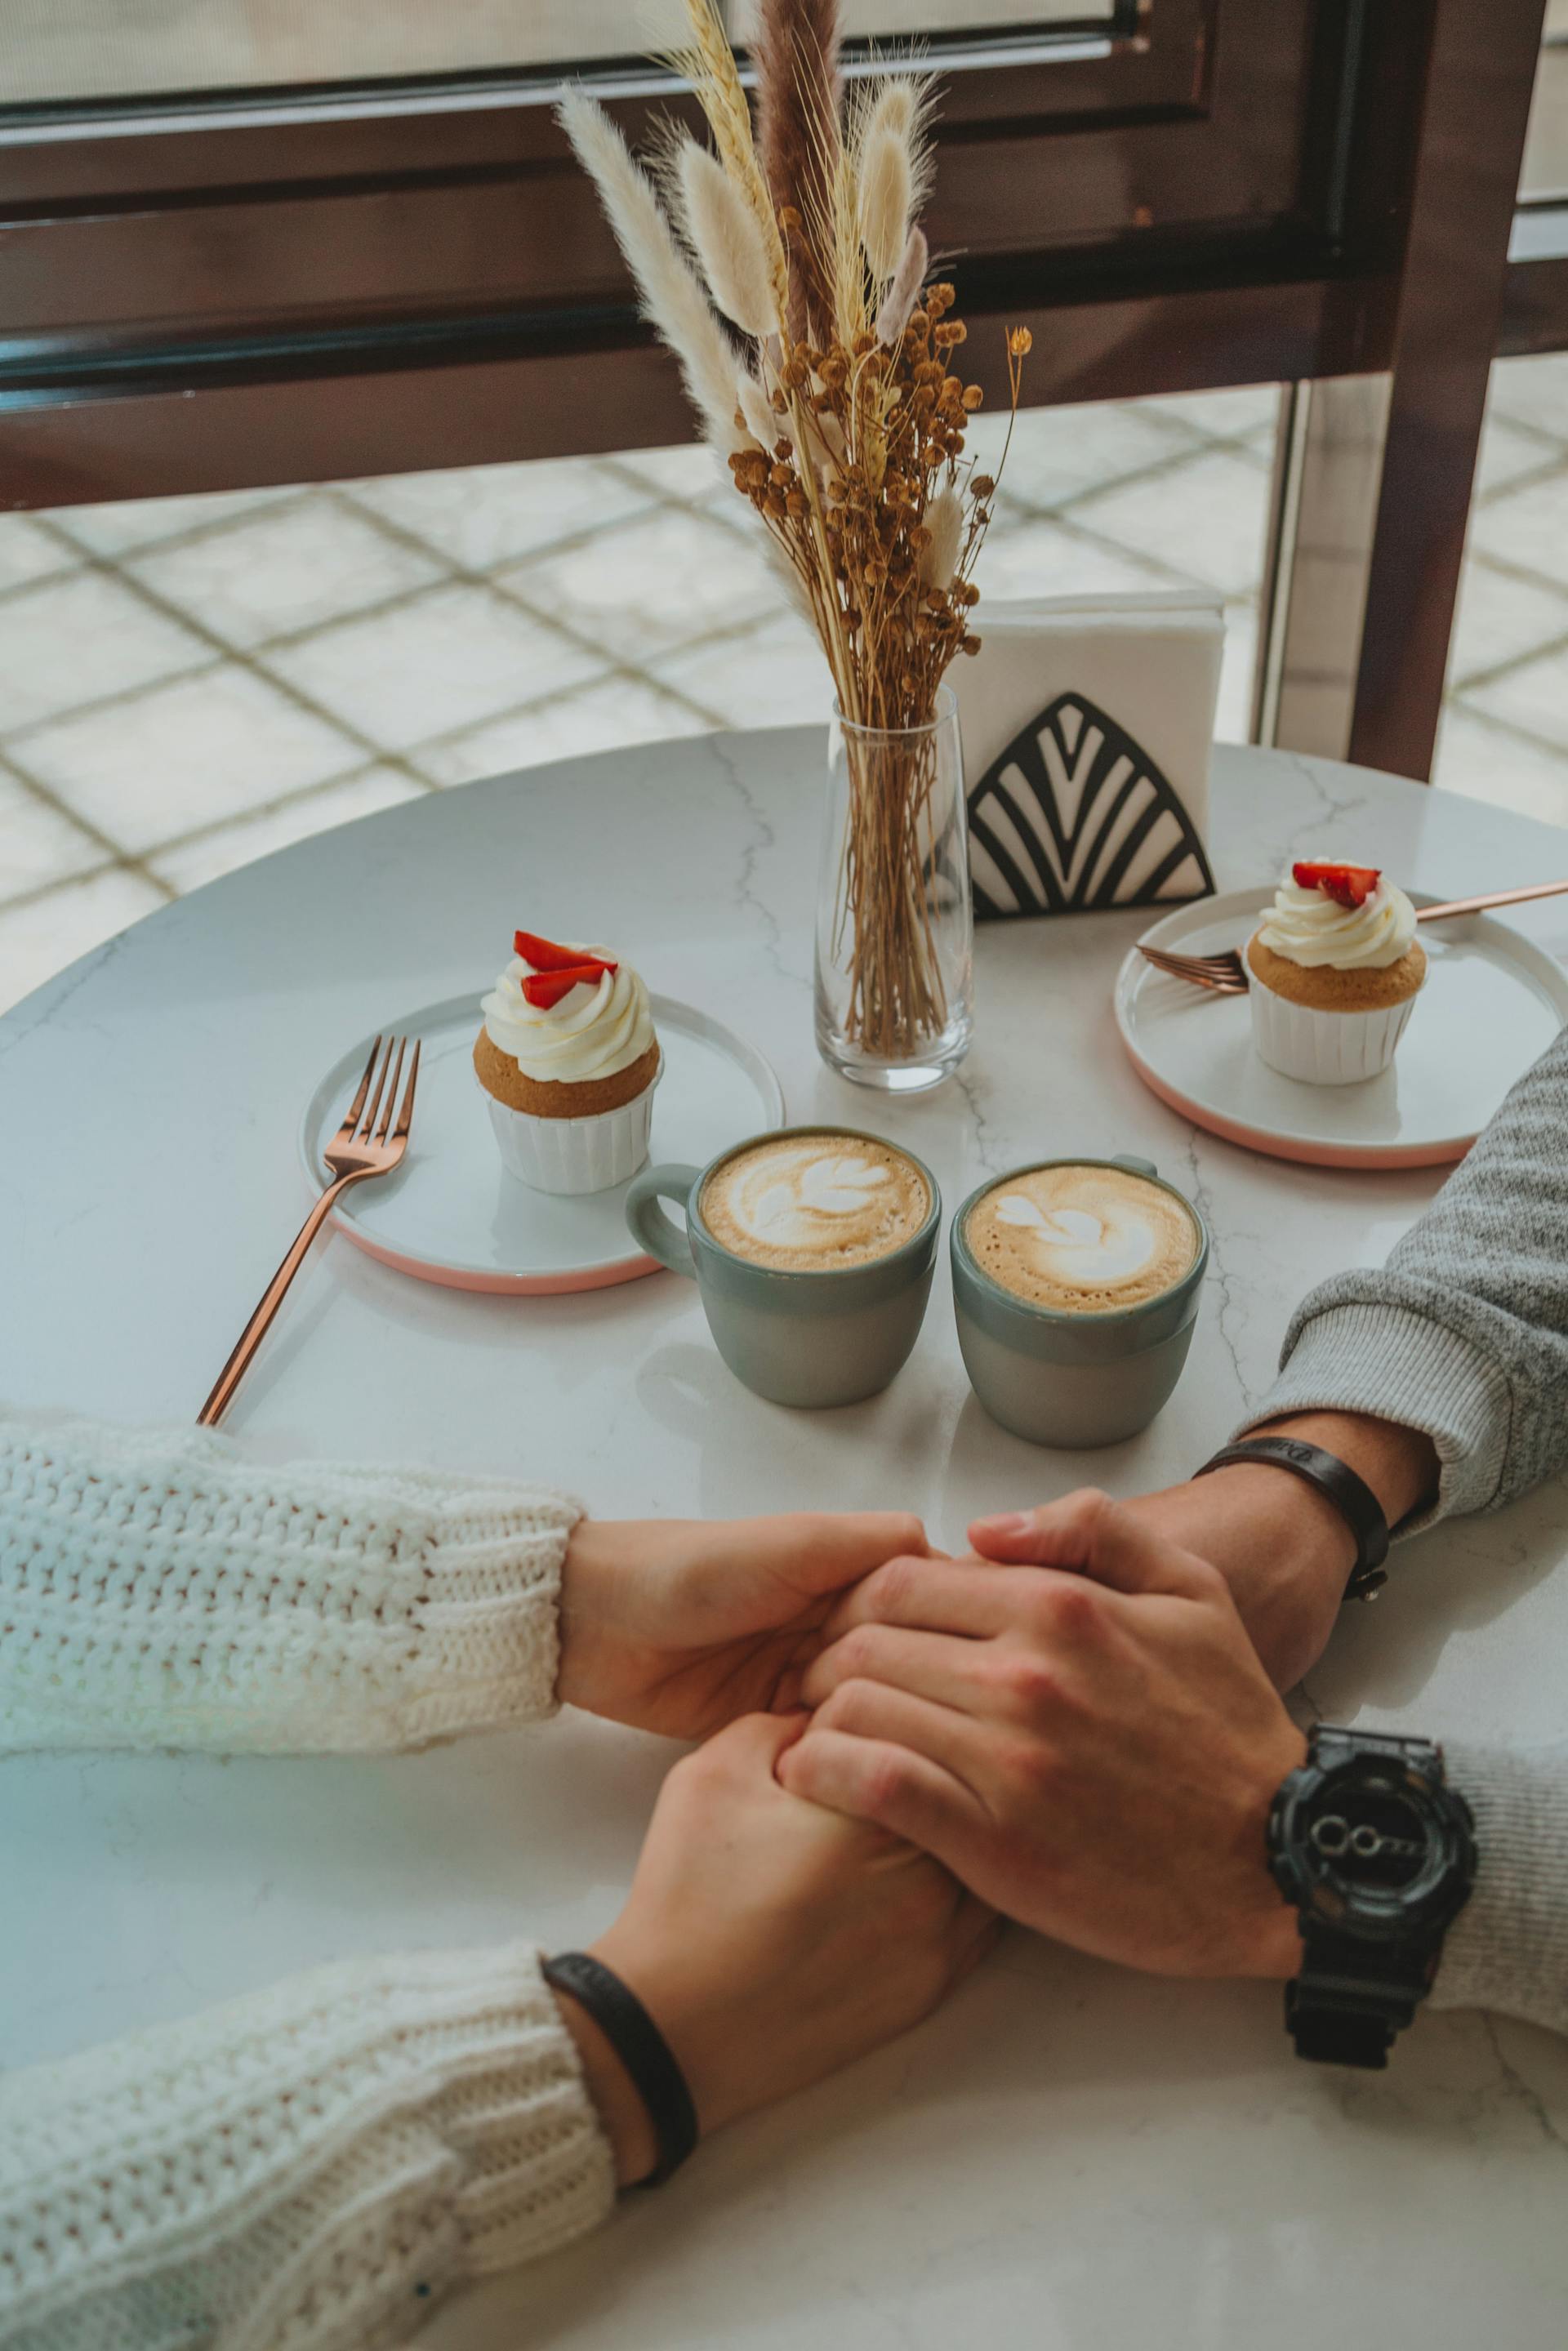 Un couple se tenant par la main dans un restaurant | Source : Pexels